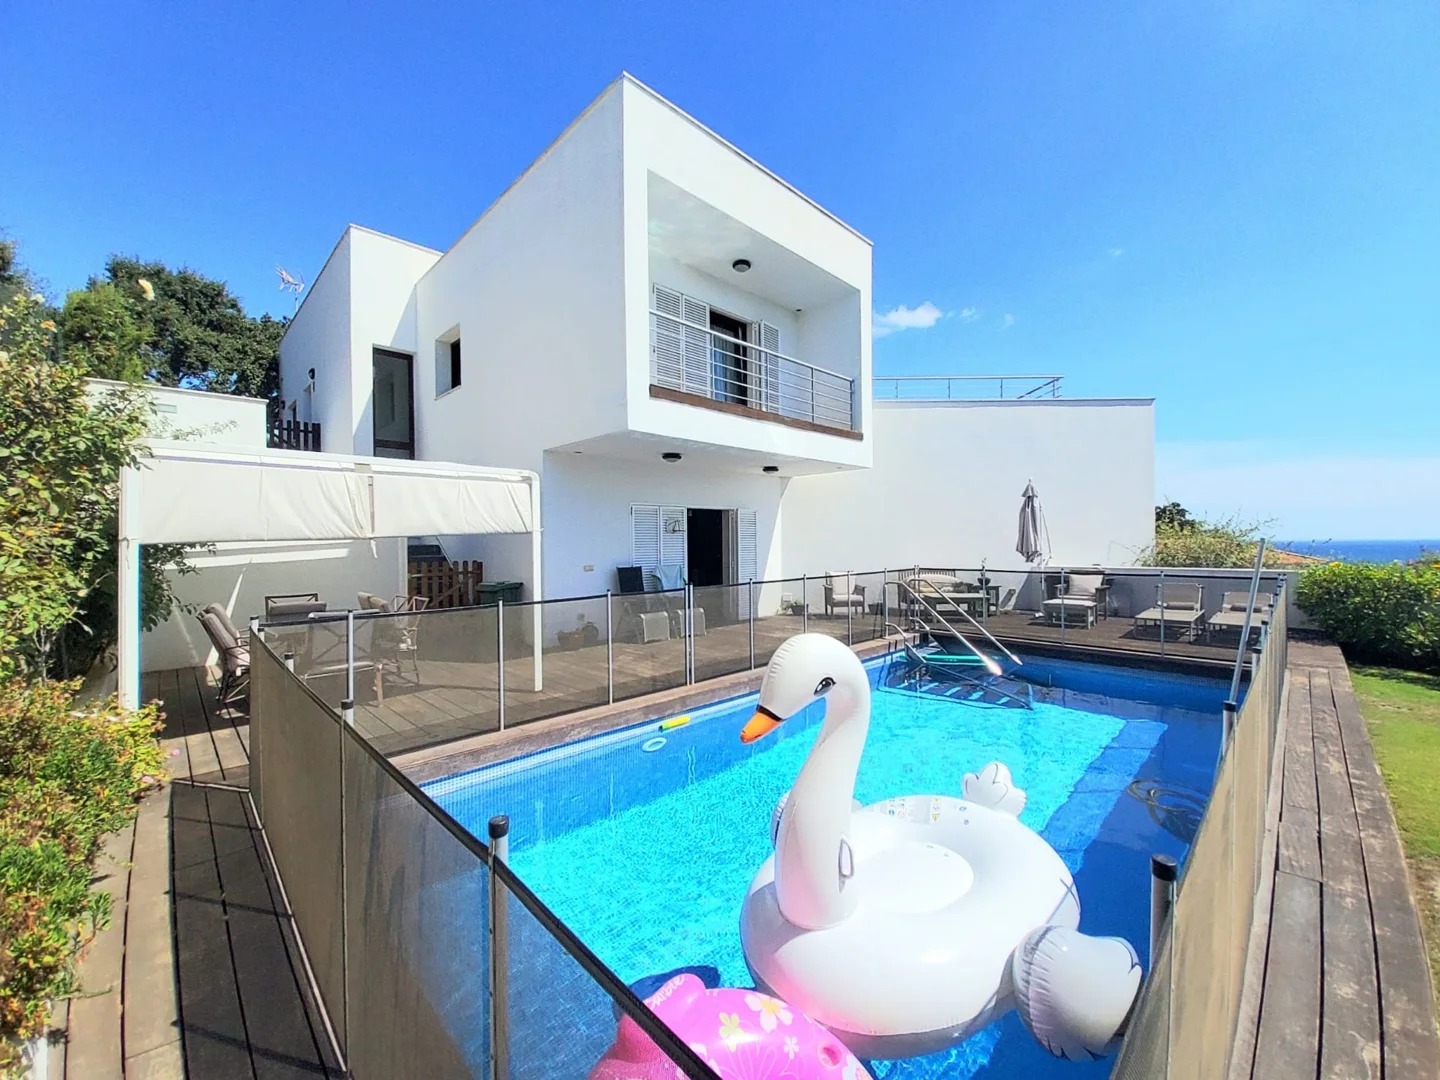 Contemporary Villa with Mediterranean Views